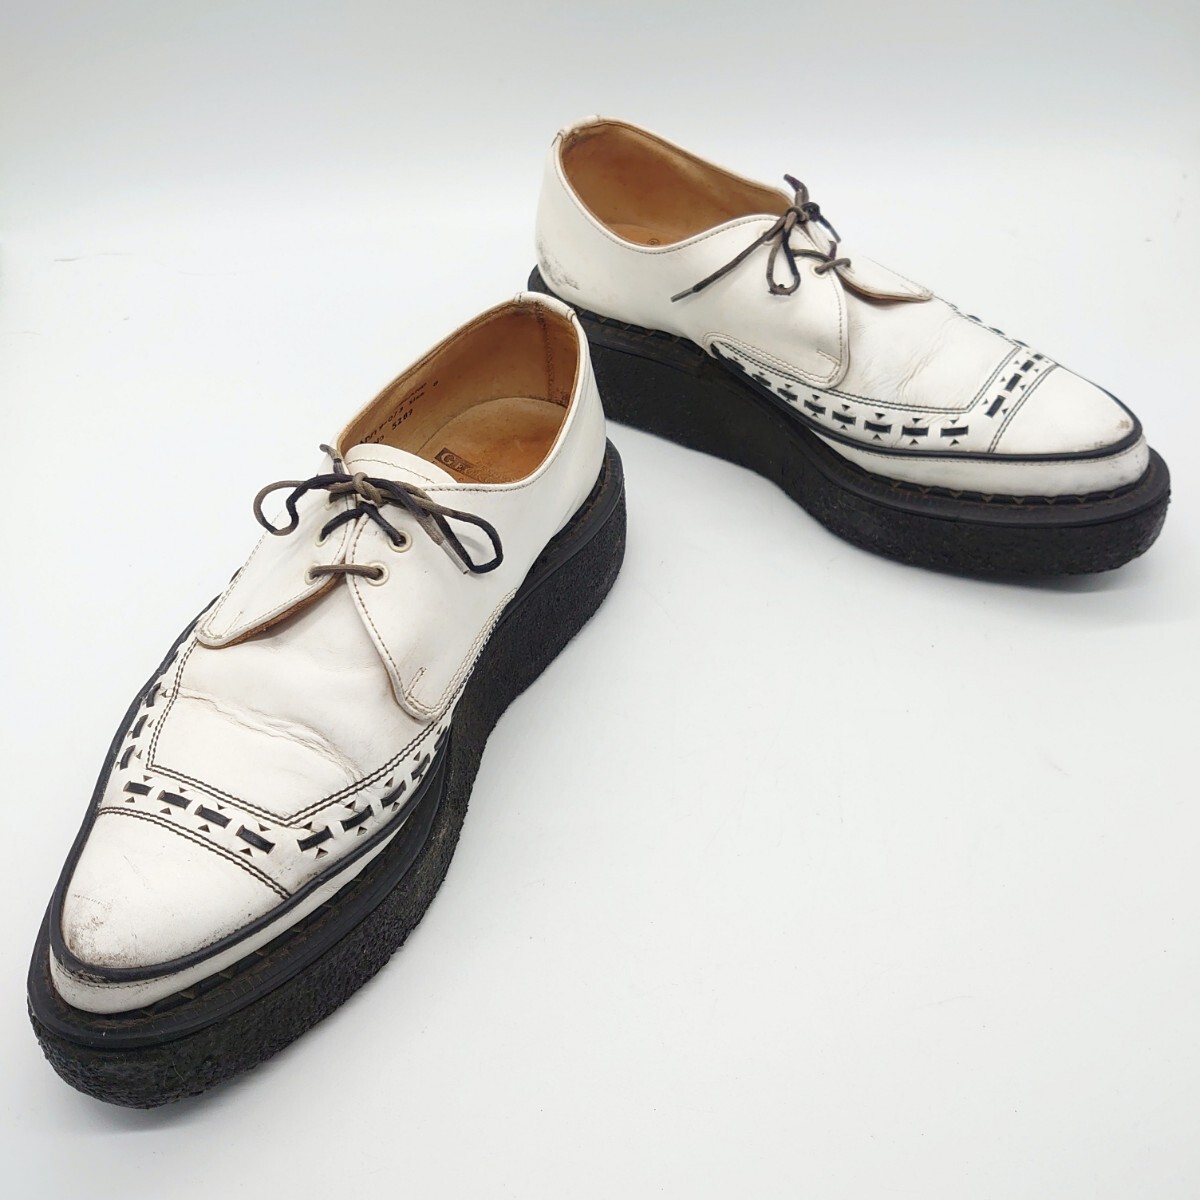 GEORGE COX ジョージコックス 5289 GIBSON ギブソン ラバーソール シューズ 靴 イングランド 英国製 ブラック ホワイト ブランド tp-24x290_画像3